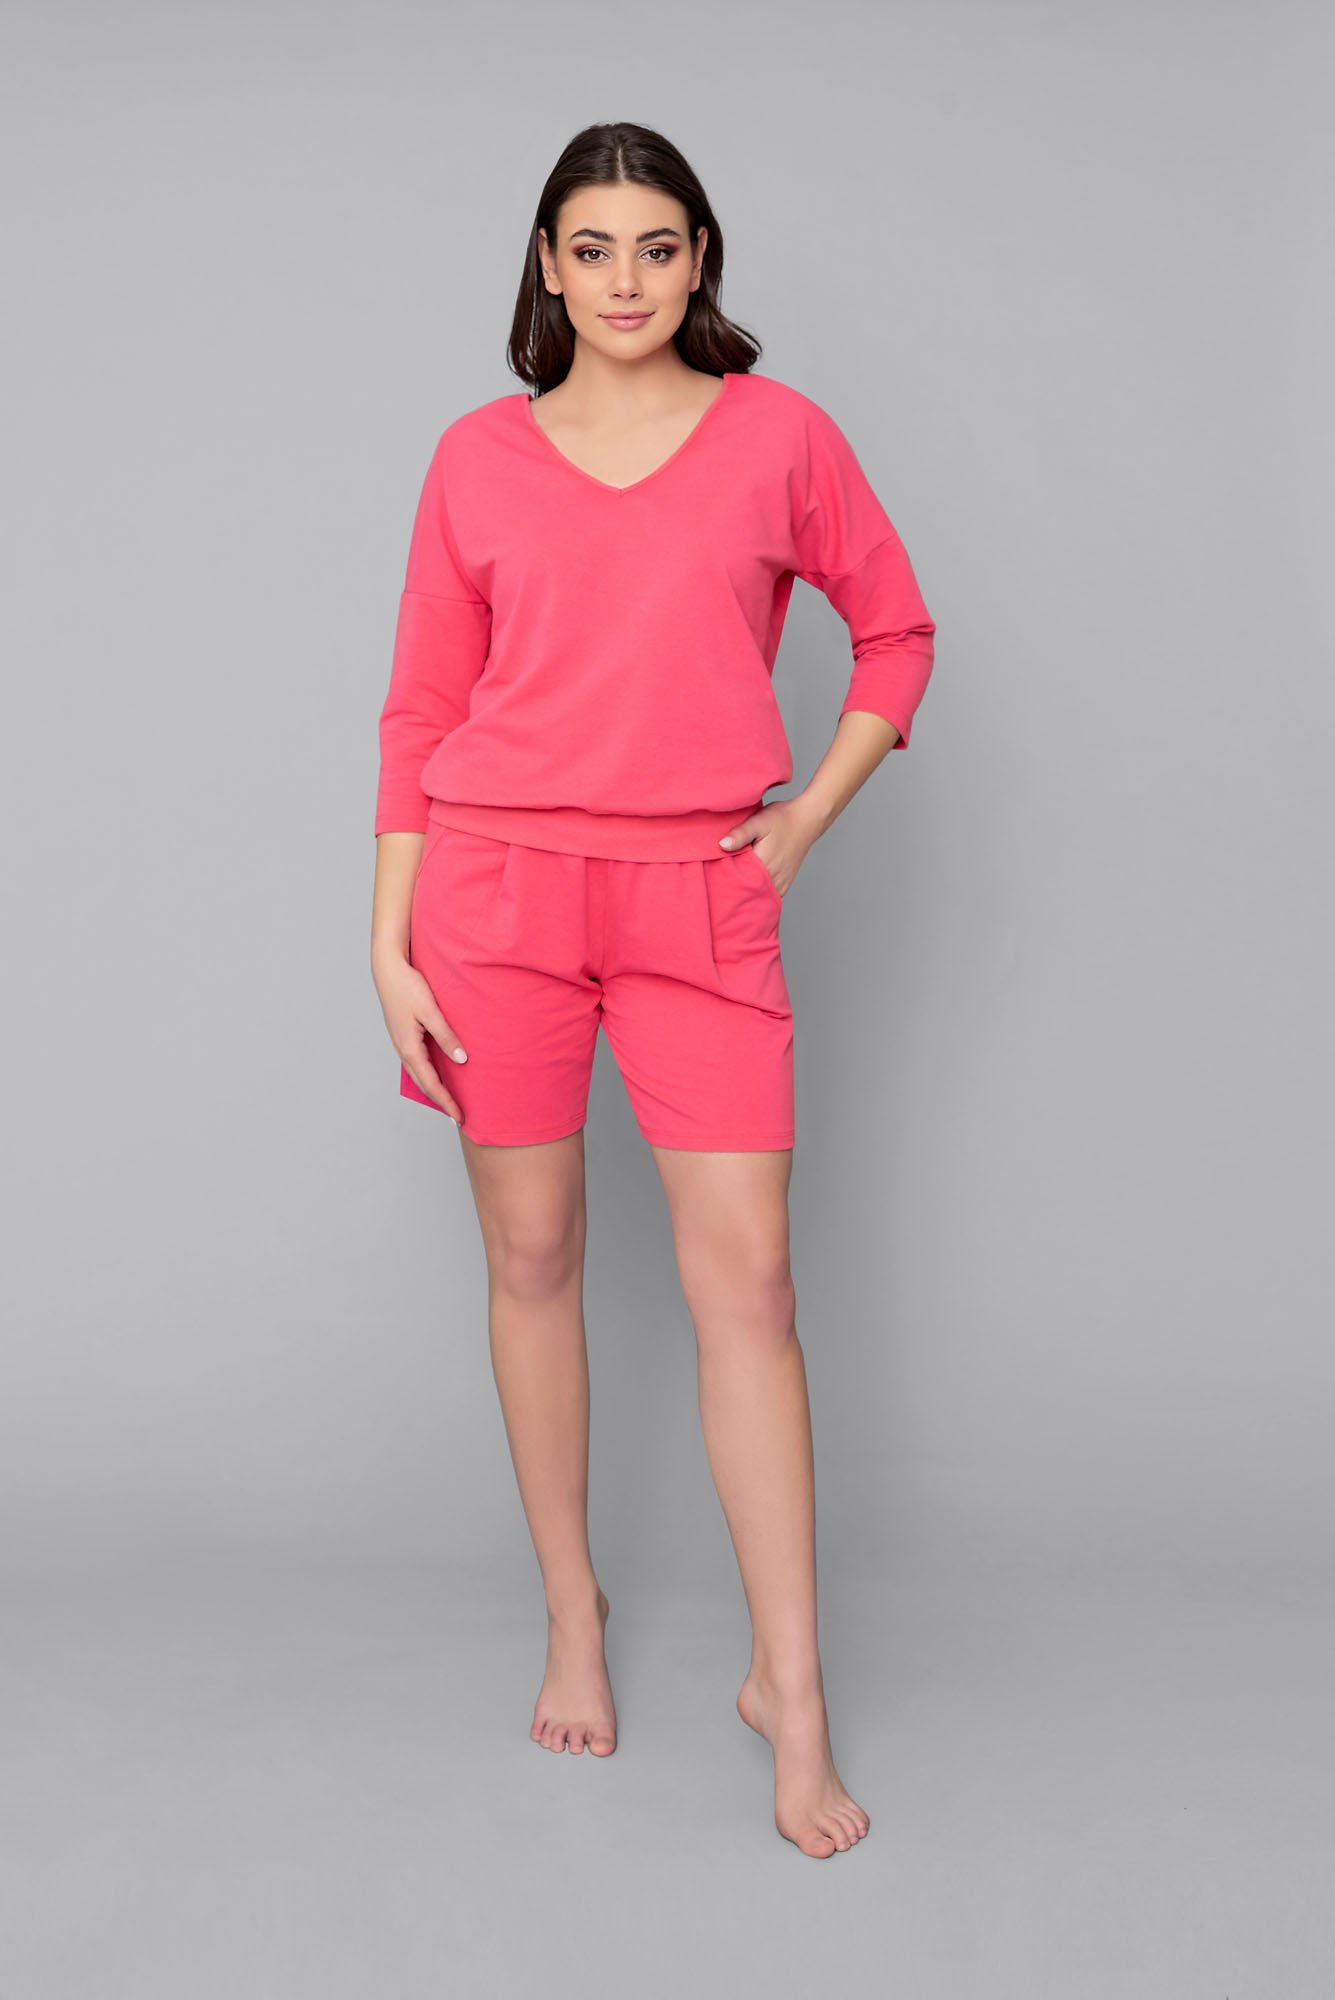 Karina women's set, 3/4 sleeves, short legs - raspberry